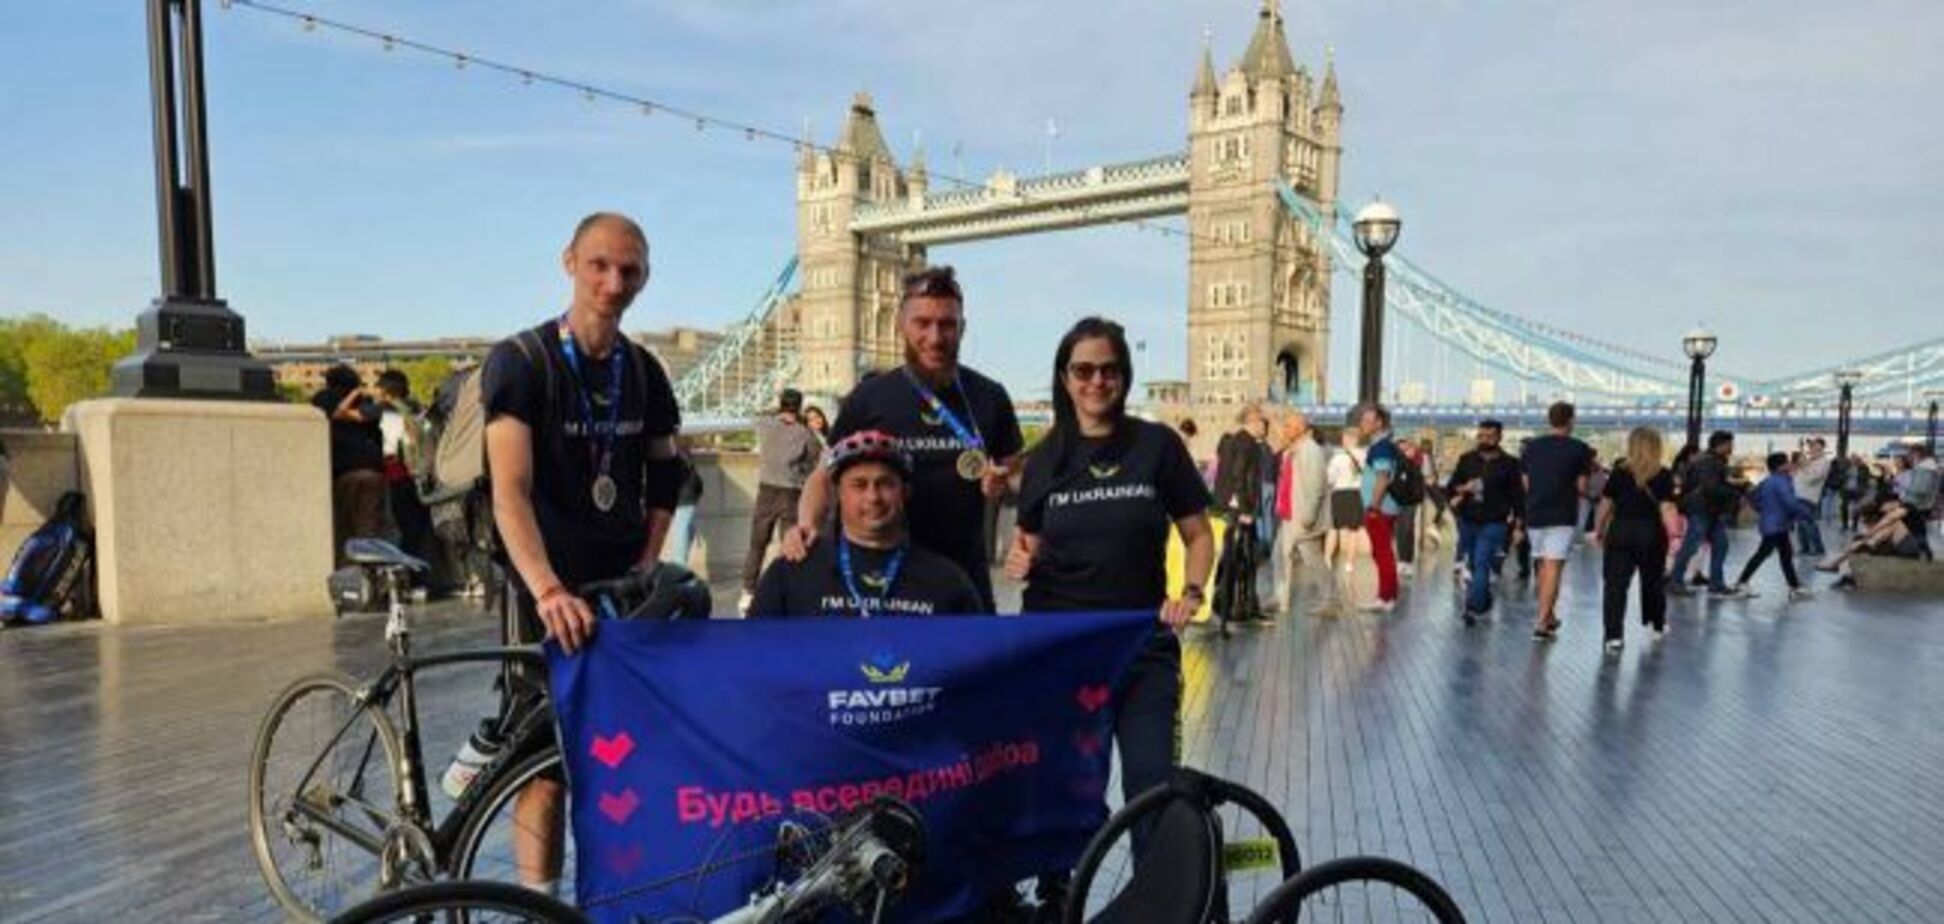 Favbet Foundation помог украинской команде принять участие в велопробеге в Лондоне